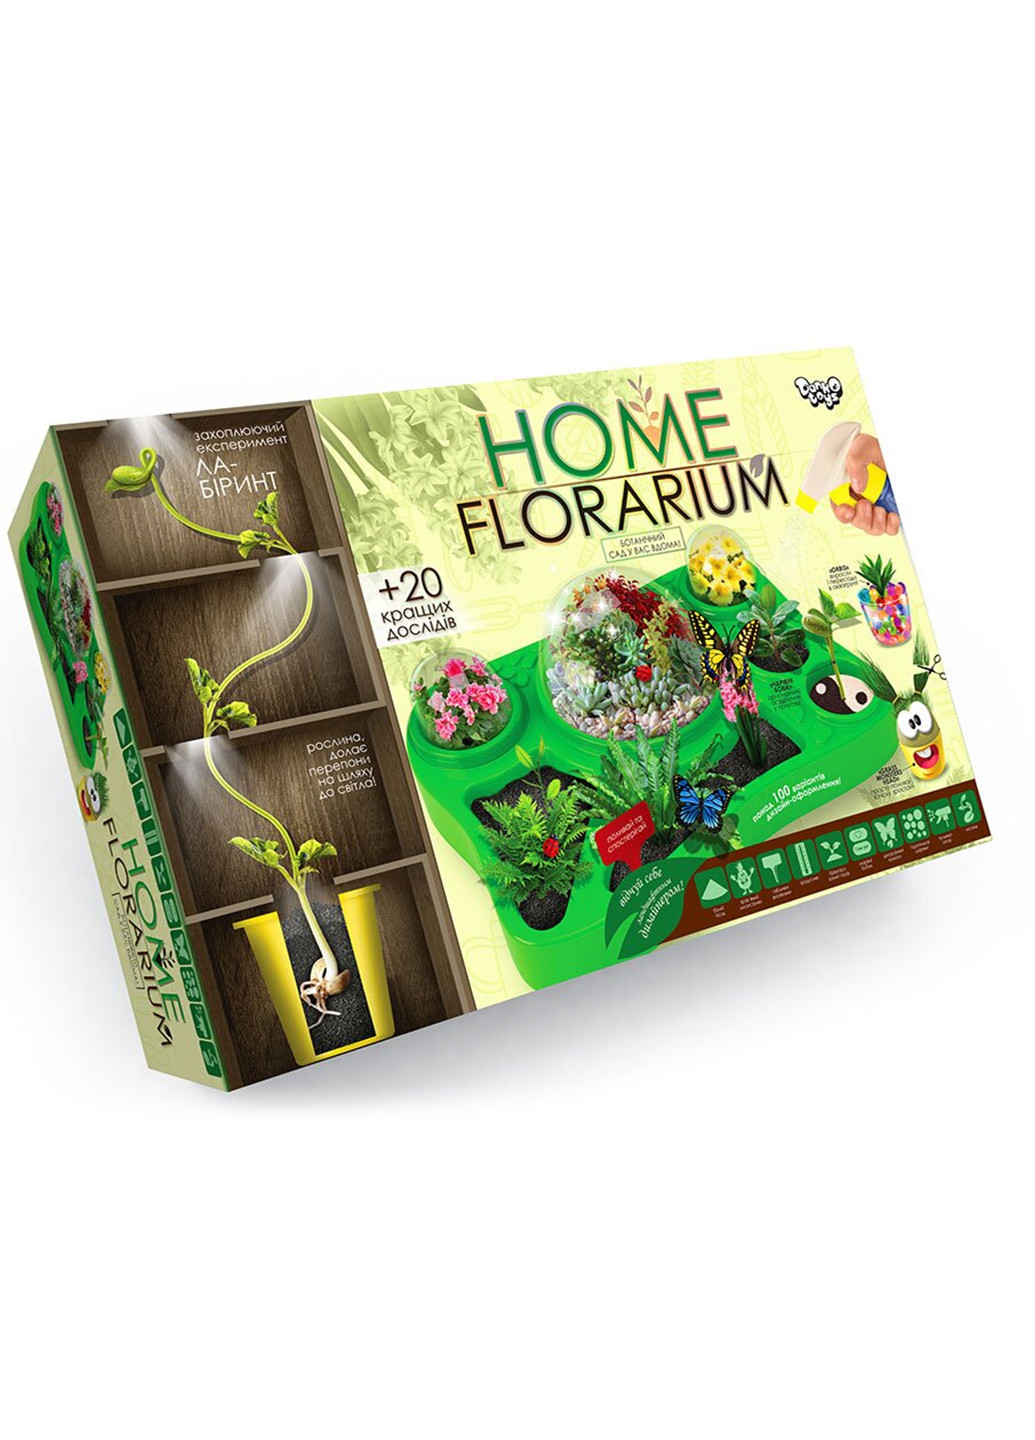 Безопасный образовательный набор для выращивания растений "HOME FLORARIUM" Danko Toys hfl-01-01u (255259289)